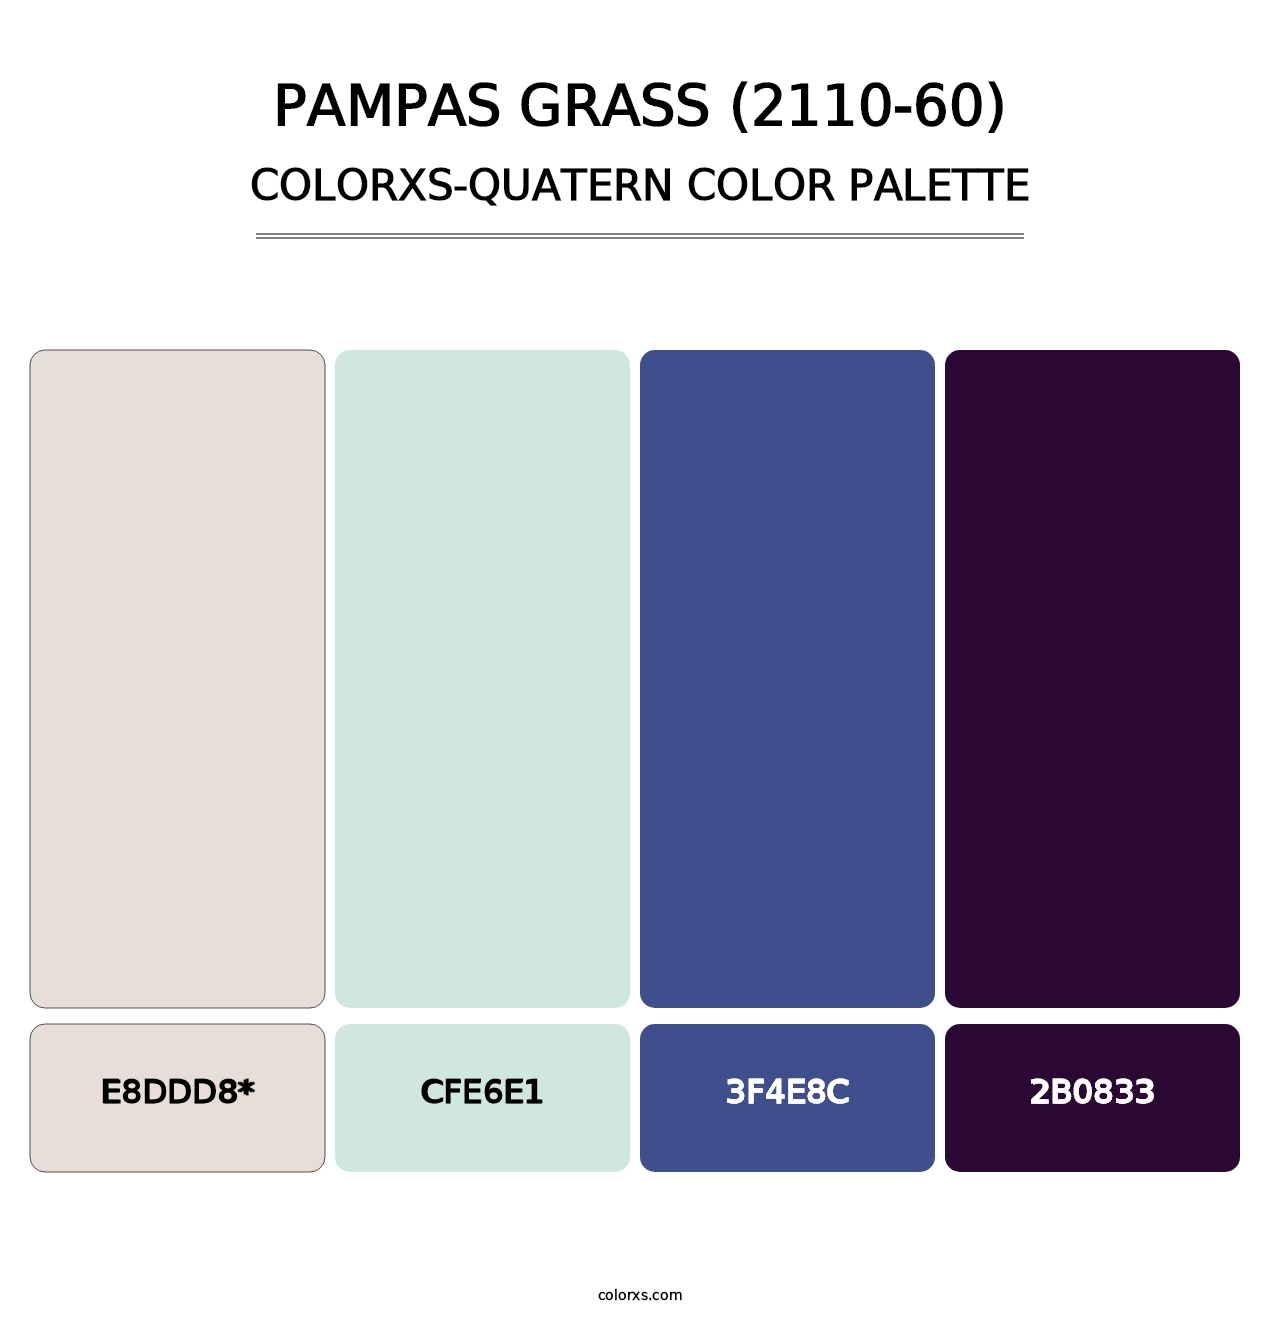 Pampas Grass (2110-60) - Colorxs Quatern Palette